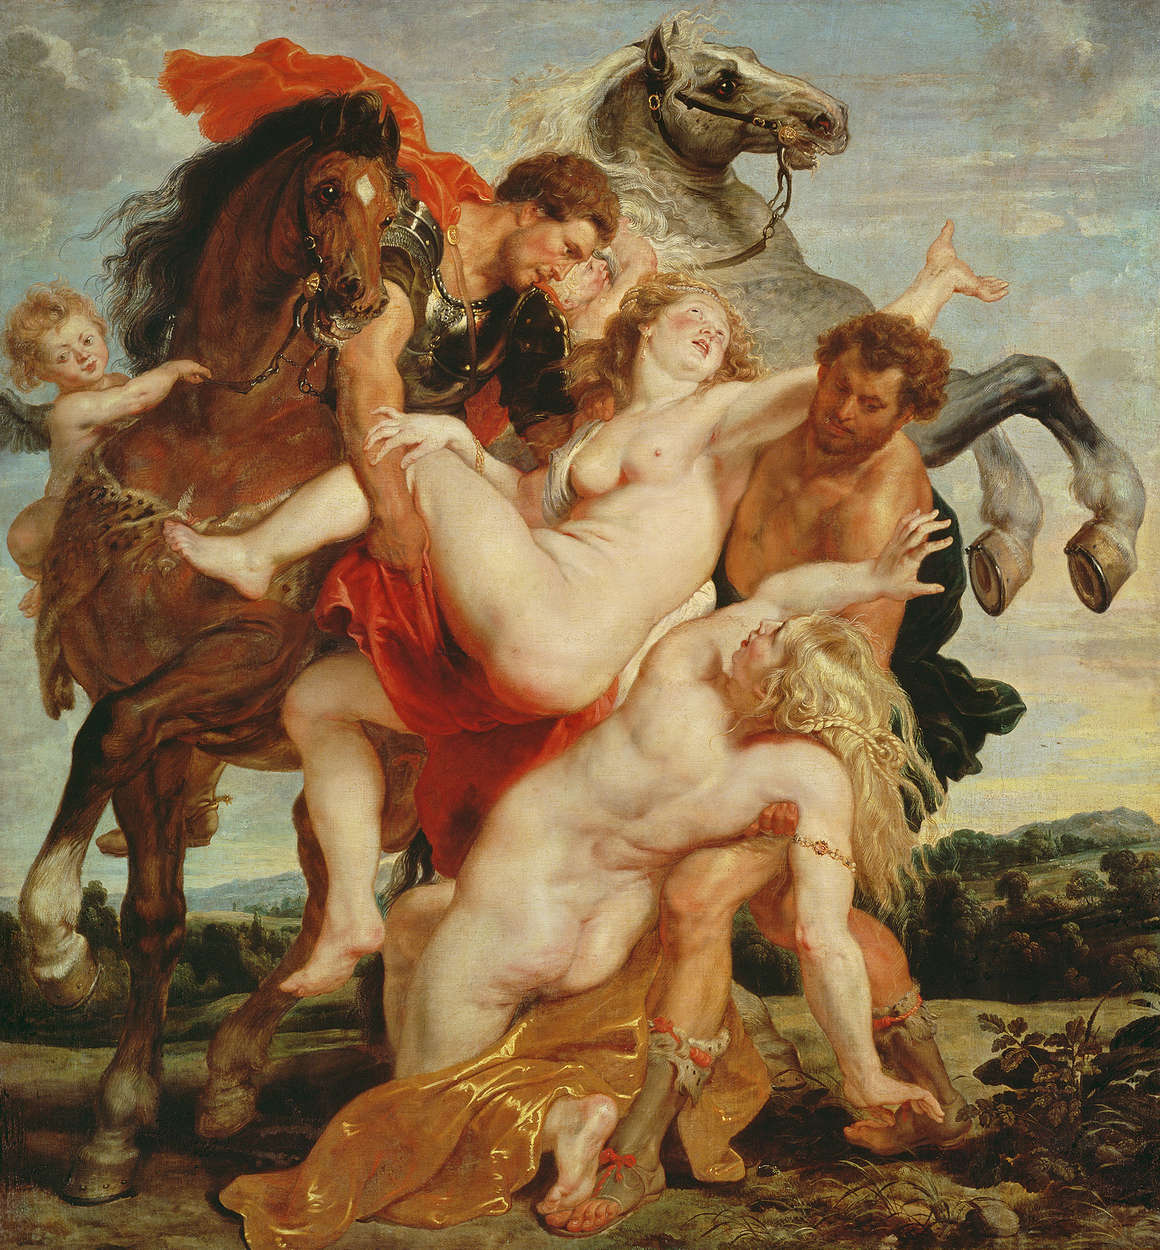             Verkrachting van de dochters van Leucippus" muurschildering door Peter Paul Rubens
        